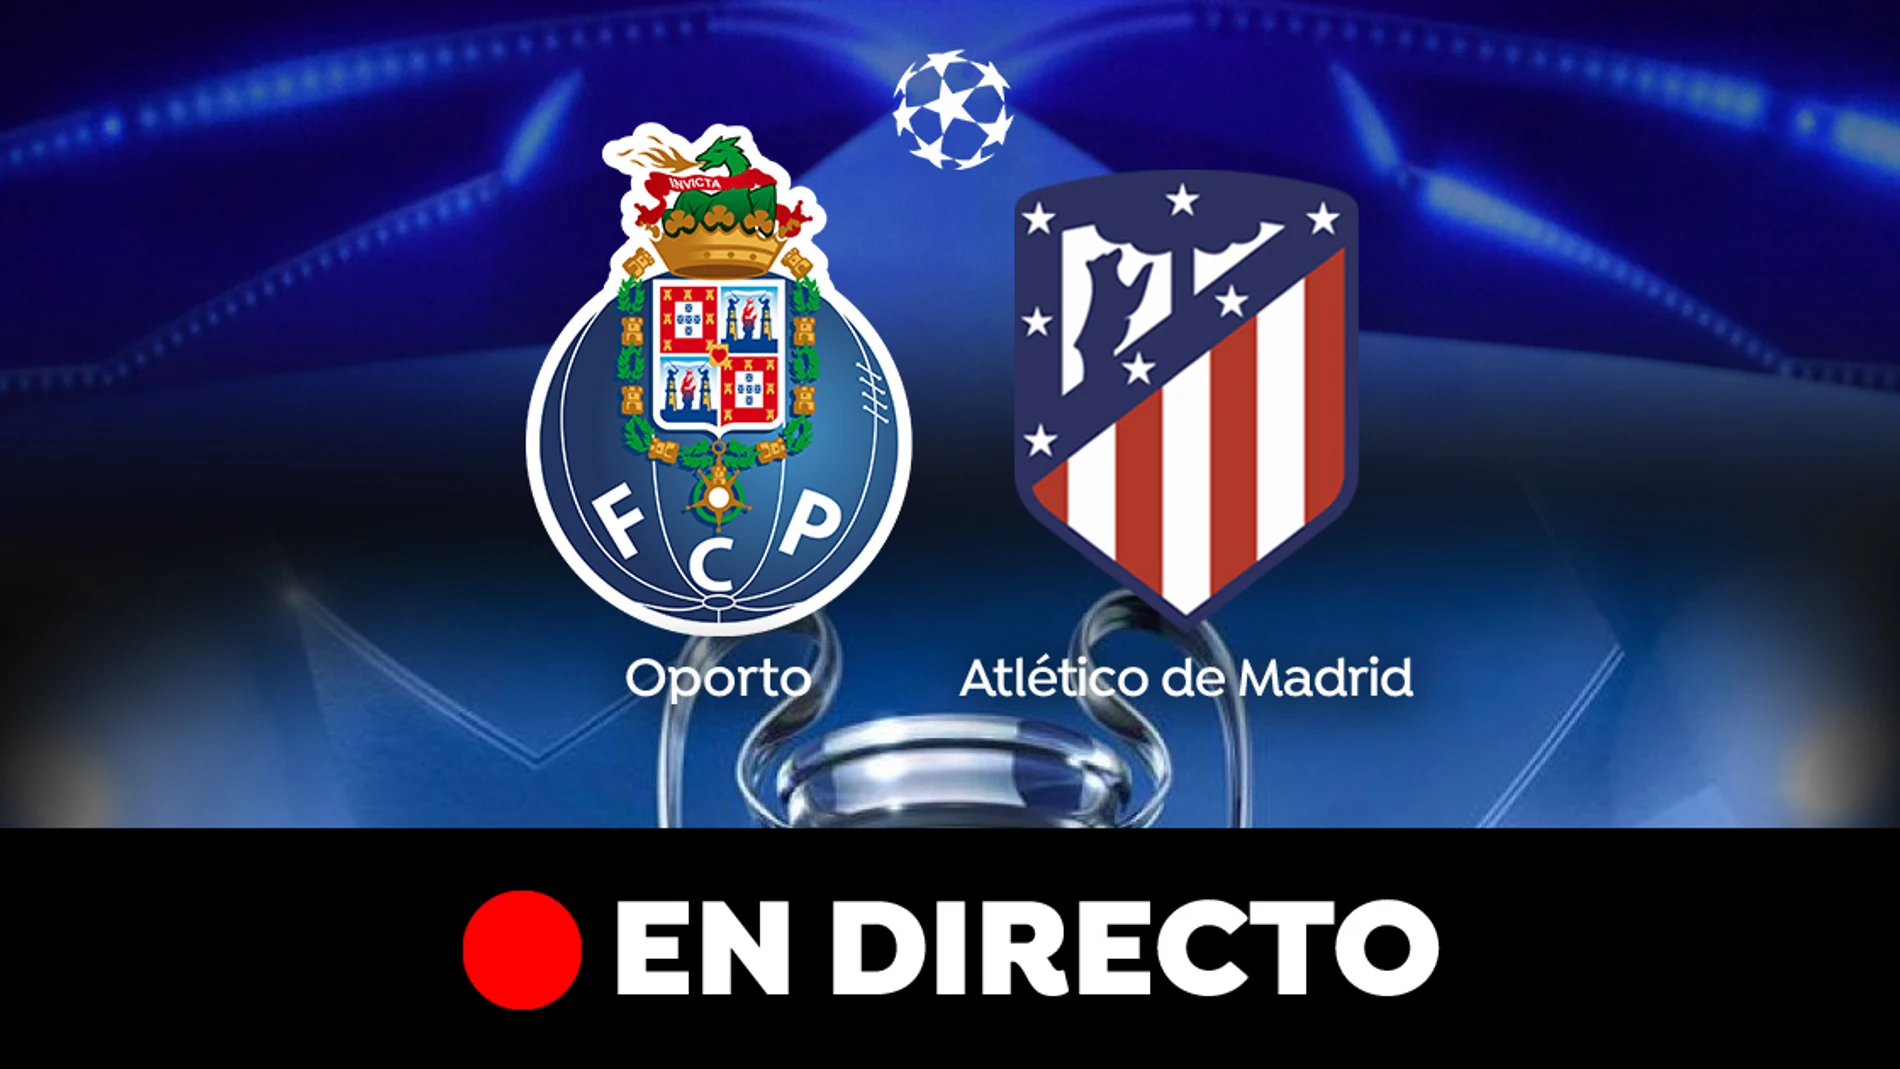 Oporto - Atlético de Madrid: Partido de Champions League, en directo 